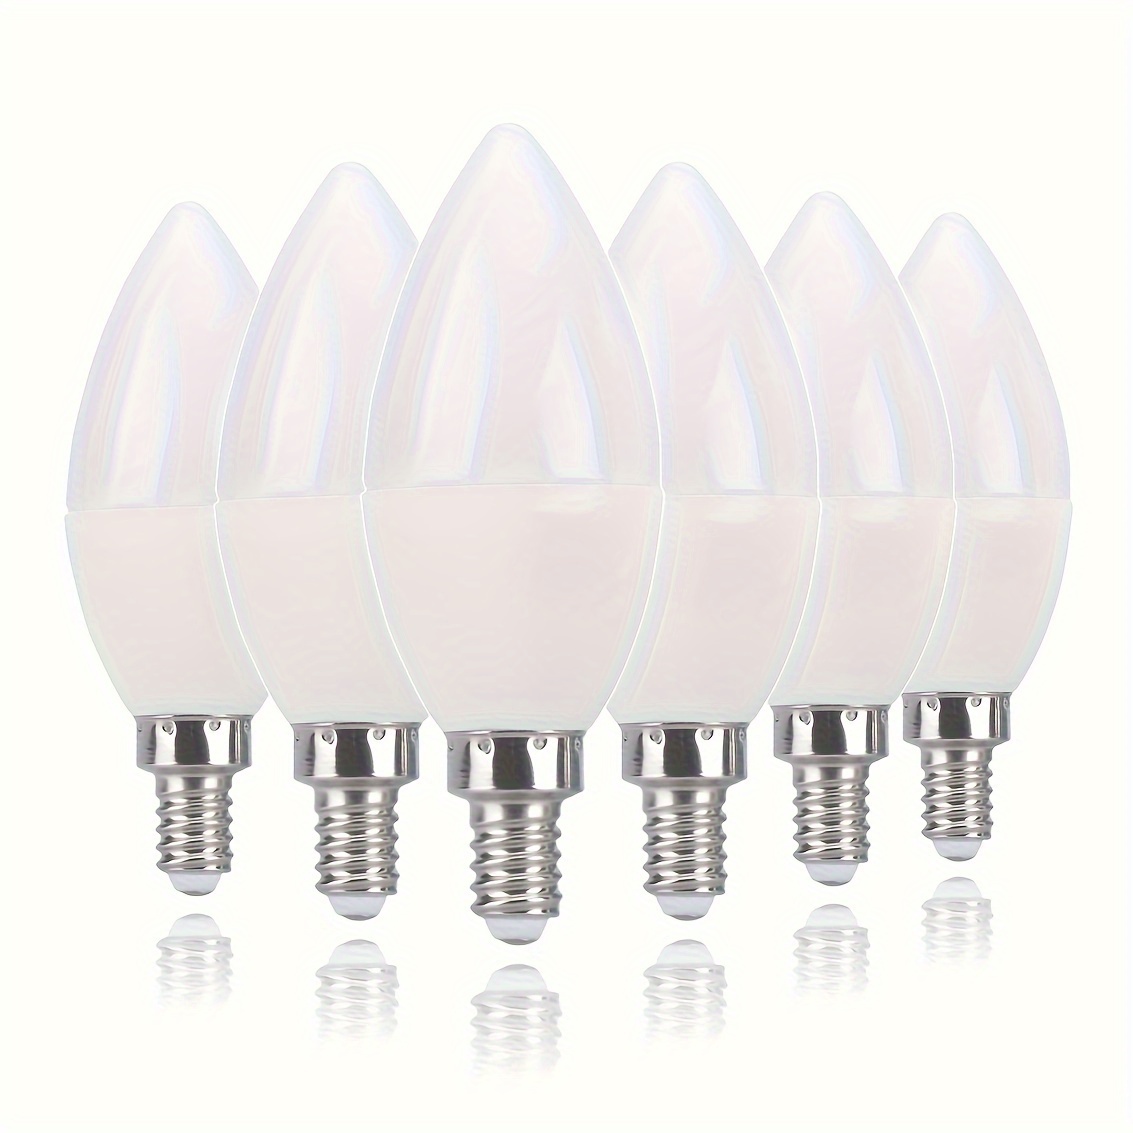 C7 Ampoule LED E14 Bougies 0,5W Ambre Blanc Chaud 2200K Veilleuse